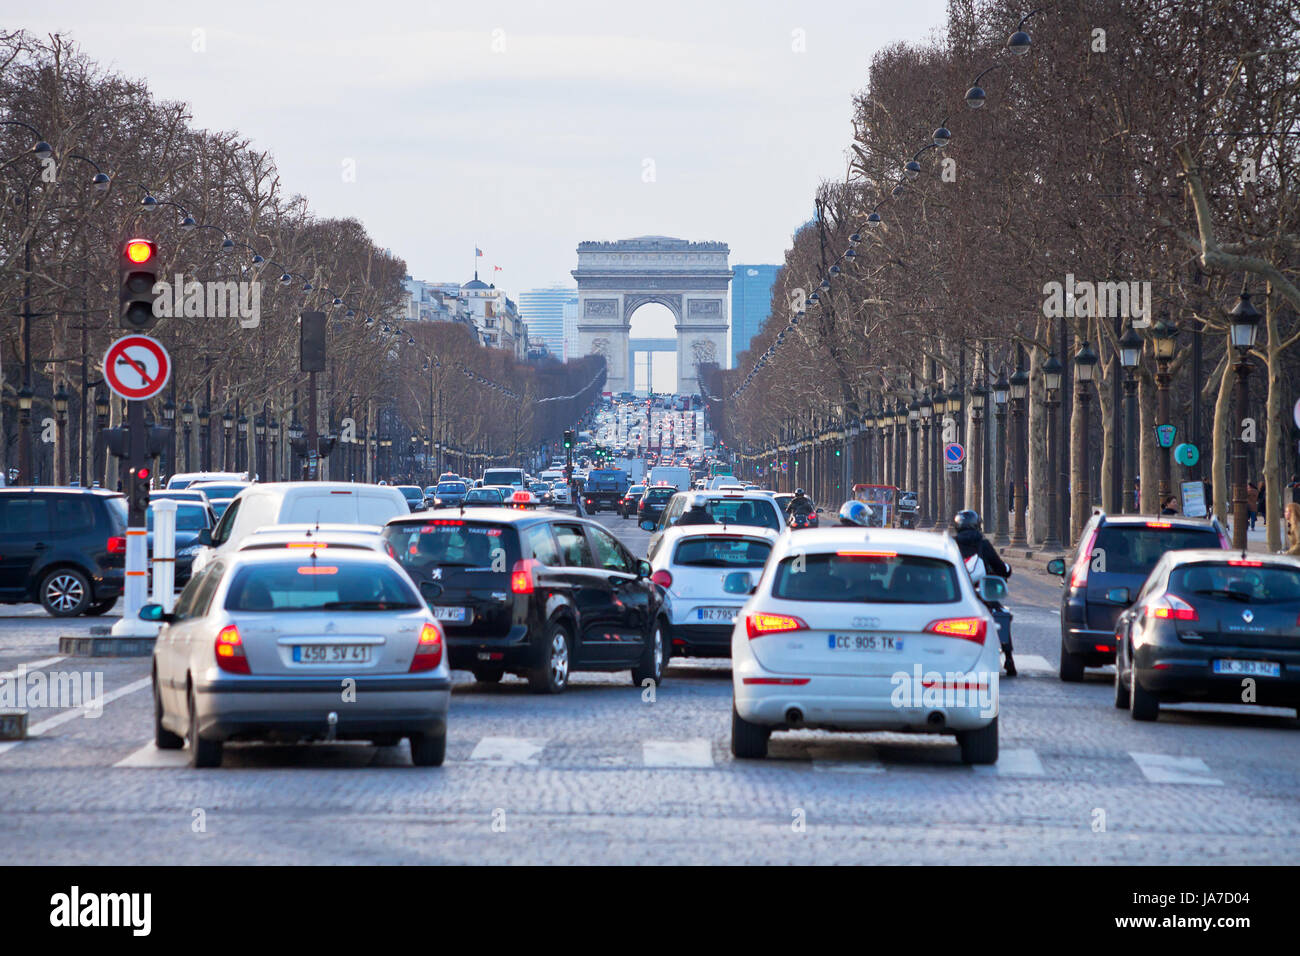 PARIS, Frankreich - März 5: Abend Verkehr auf der Avenue des Champs Elysees. Die Champs-Elysees ist Teil der Axe Historique in Paris, Frankreich am 5. März 2013 Stockfoto